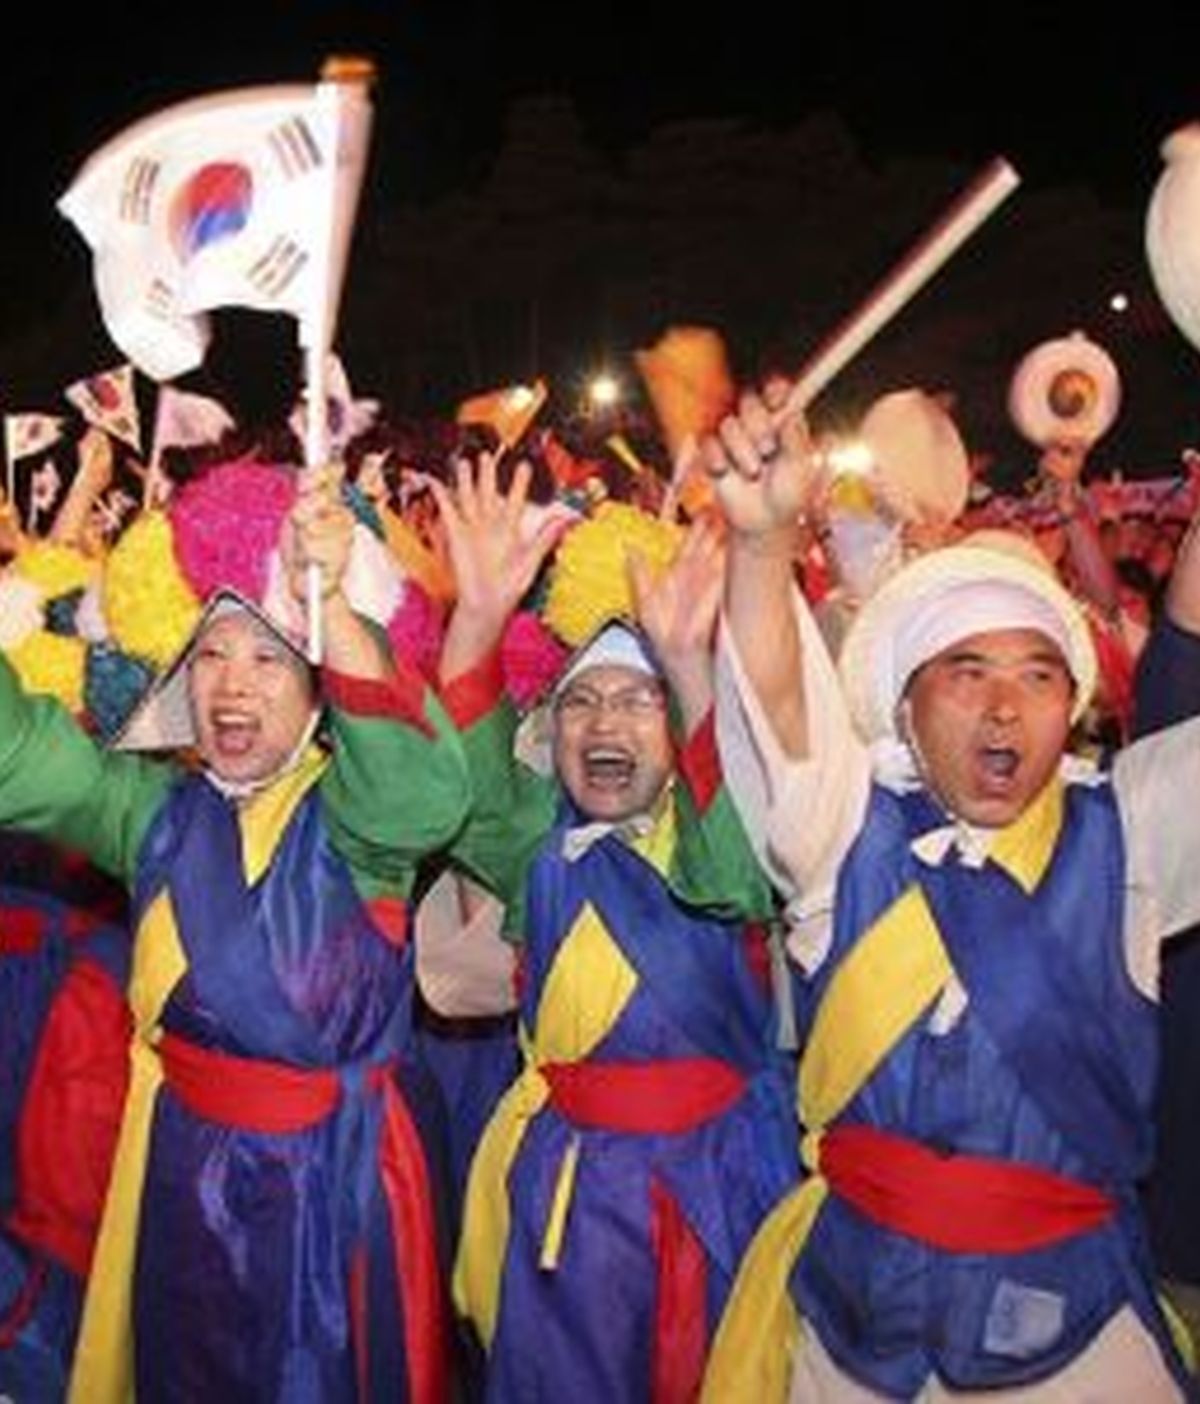 La elección de la ciudad surcoreana de Pyeongchang podría beneficiar a la posible candidatura de Madrid 2020. Foto: Reuters.